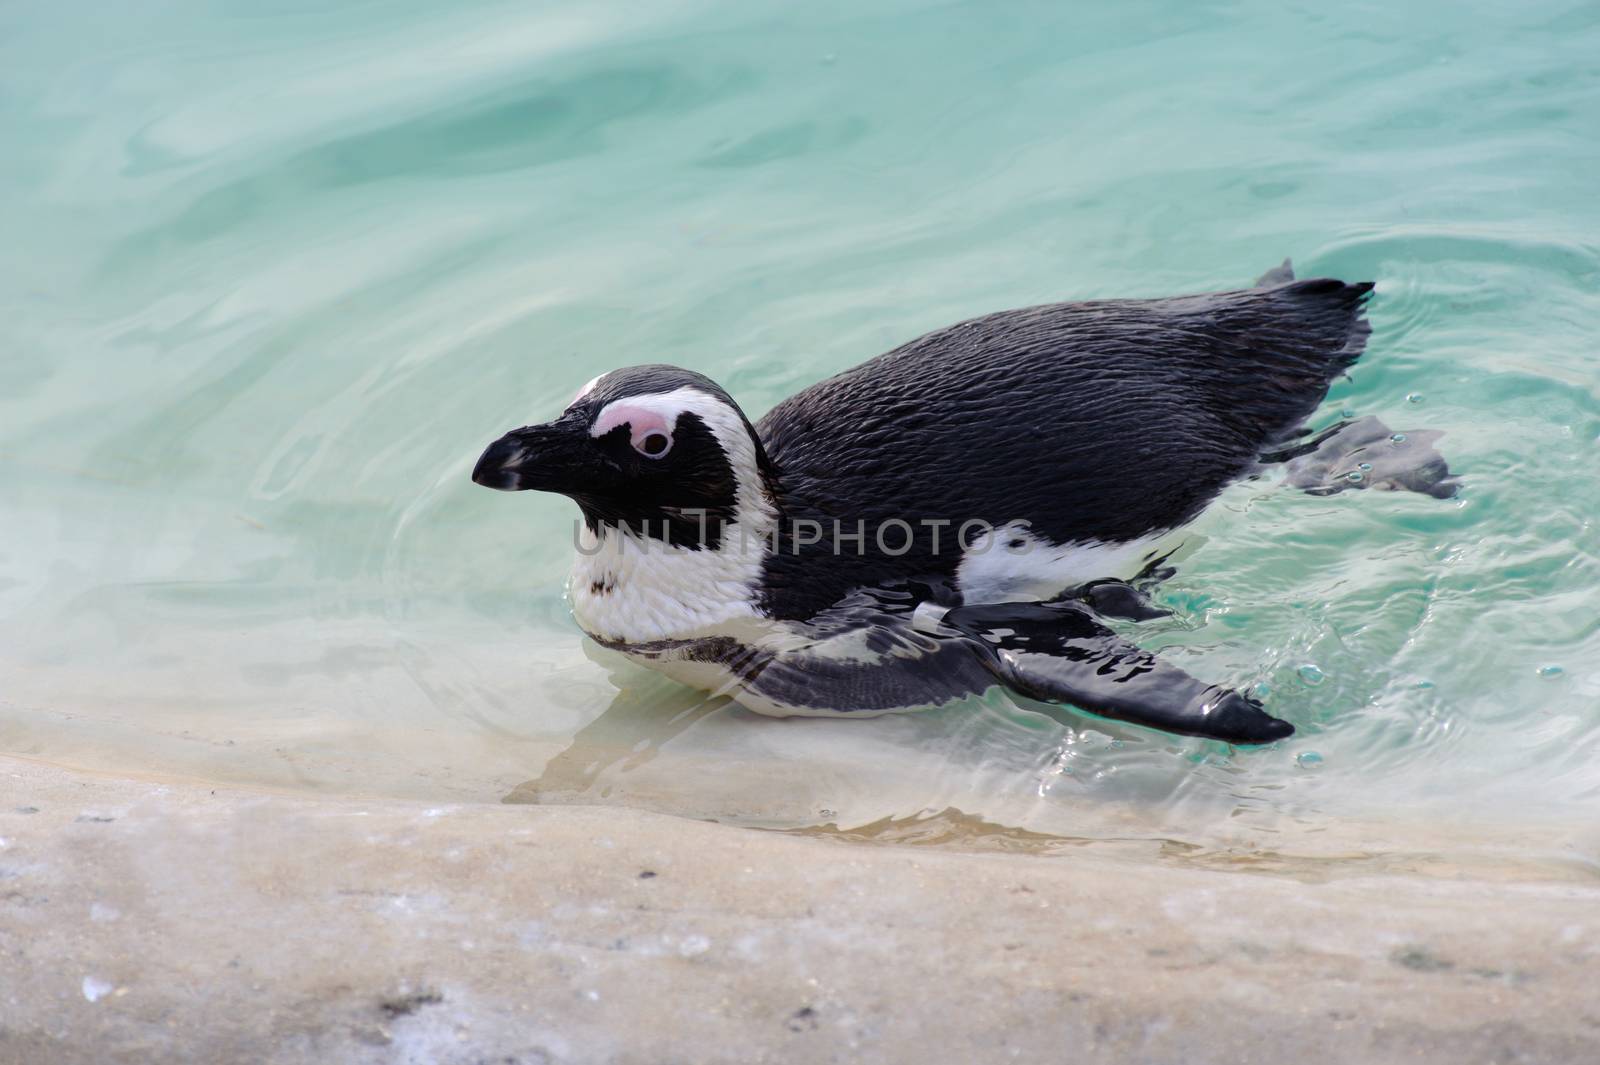 Penguin having a swim in the pool 